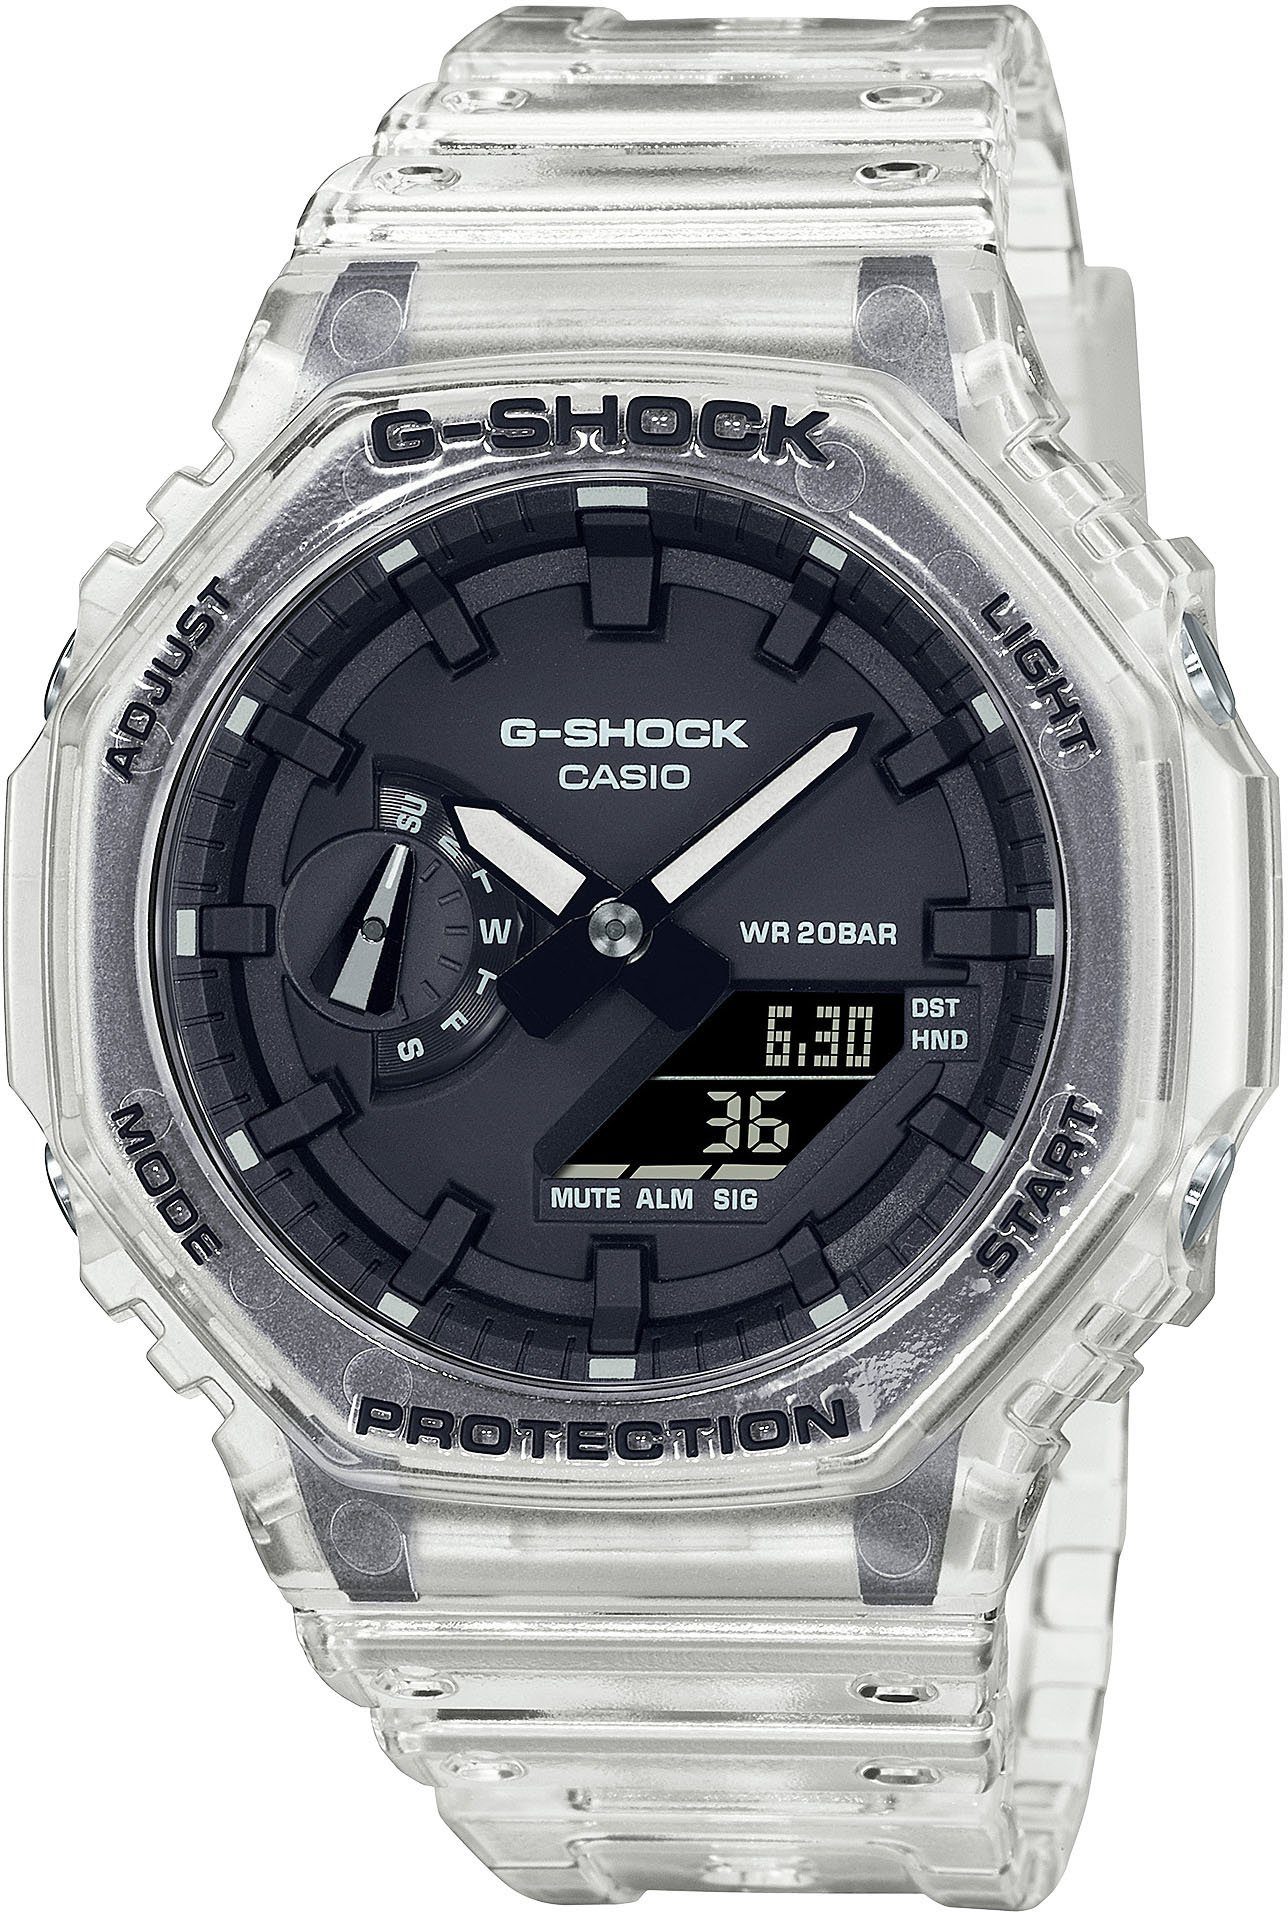 Chronograph GA-2100SKE-7AER CASIO G-SHOCK